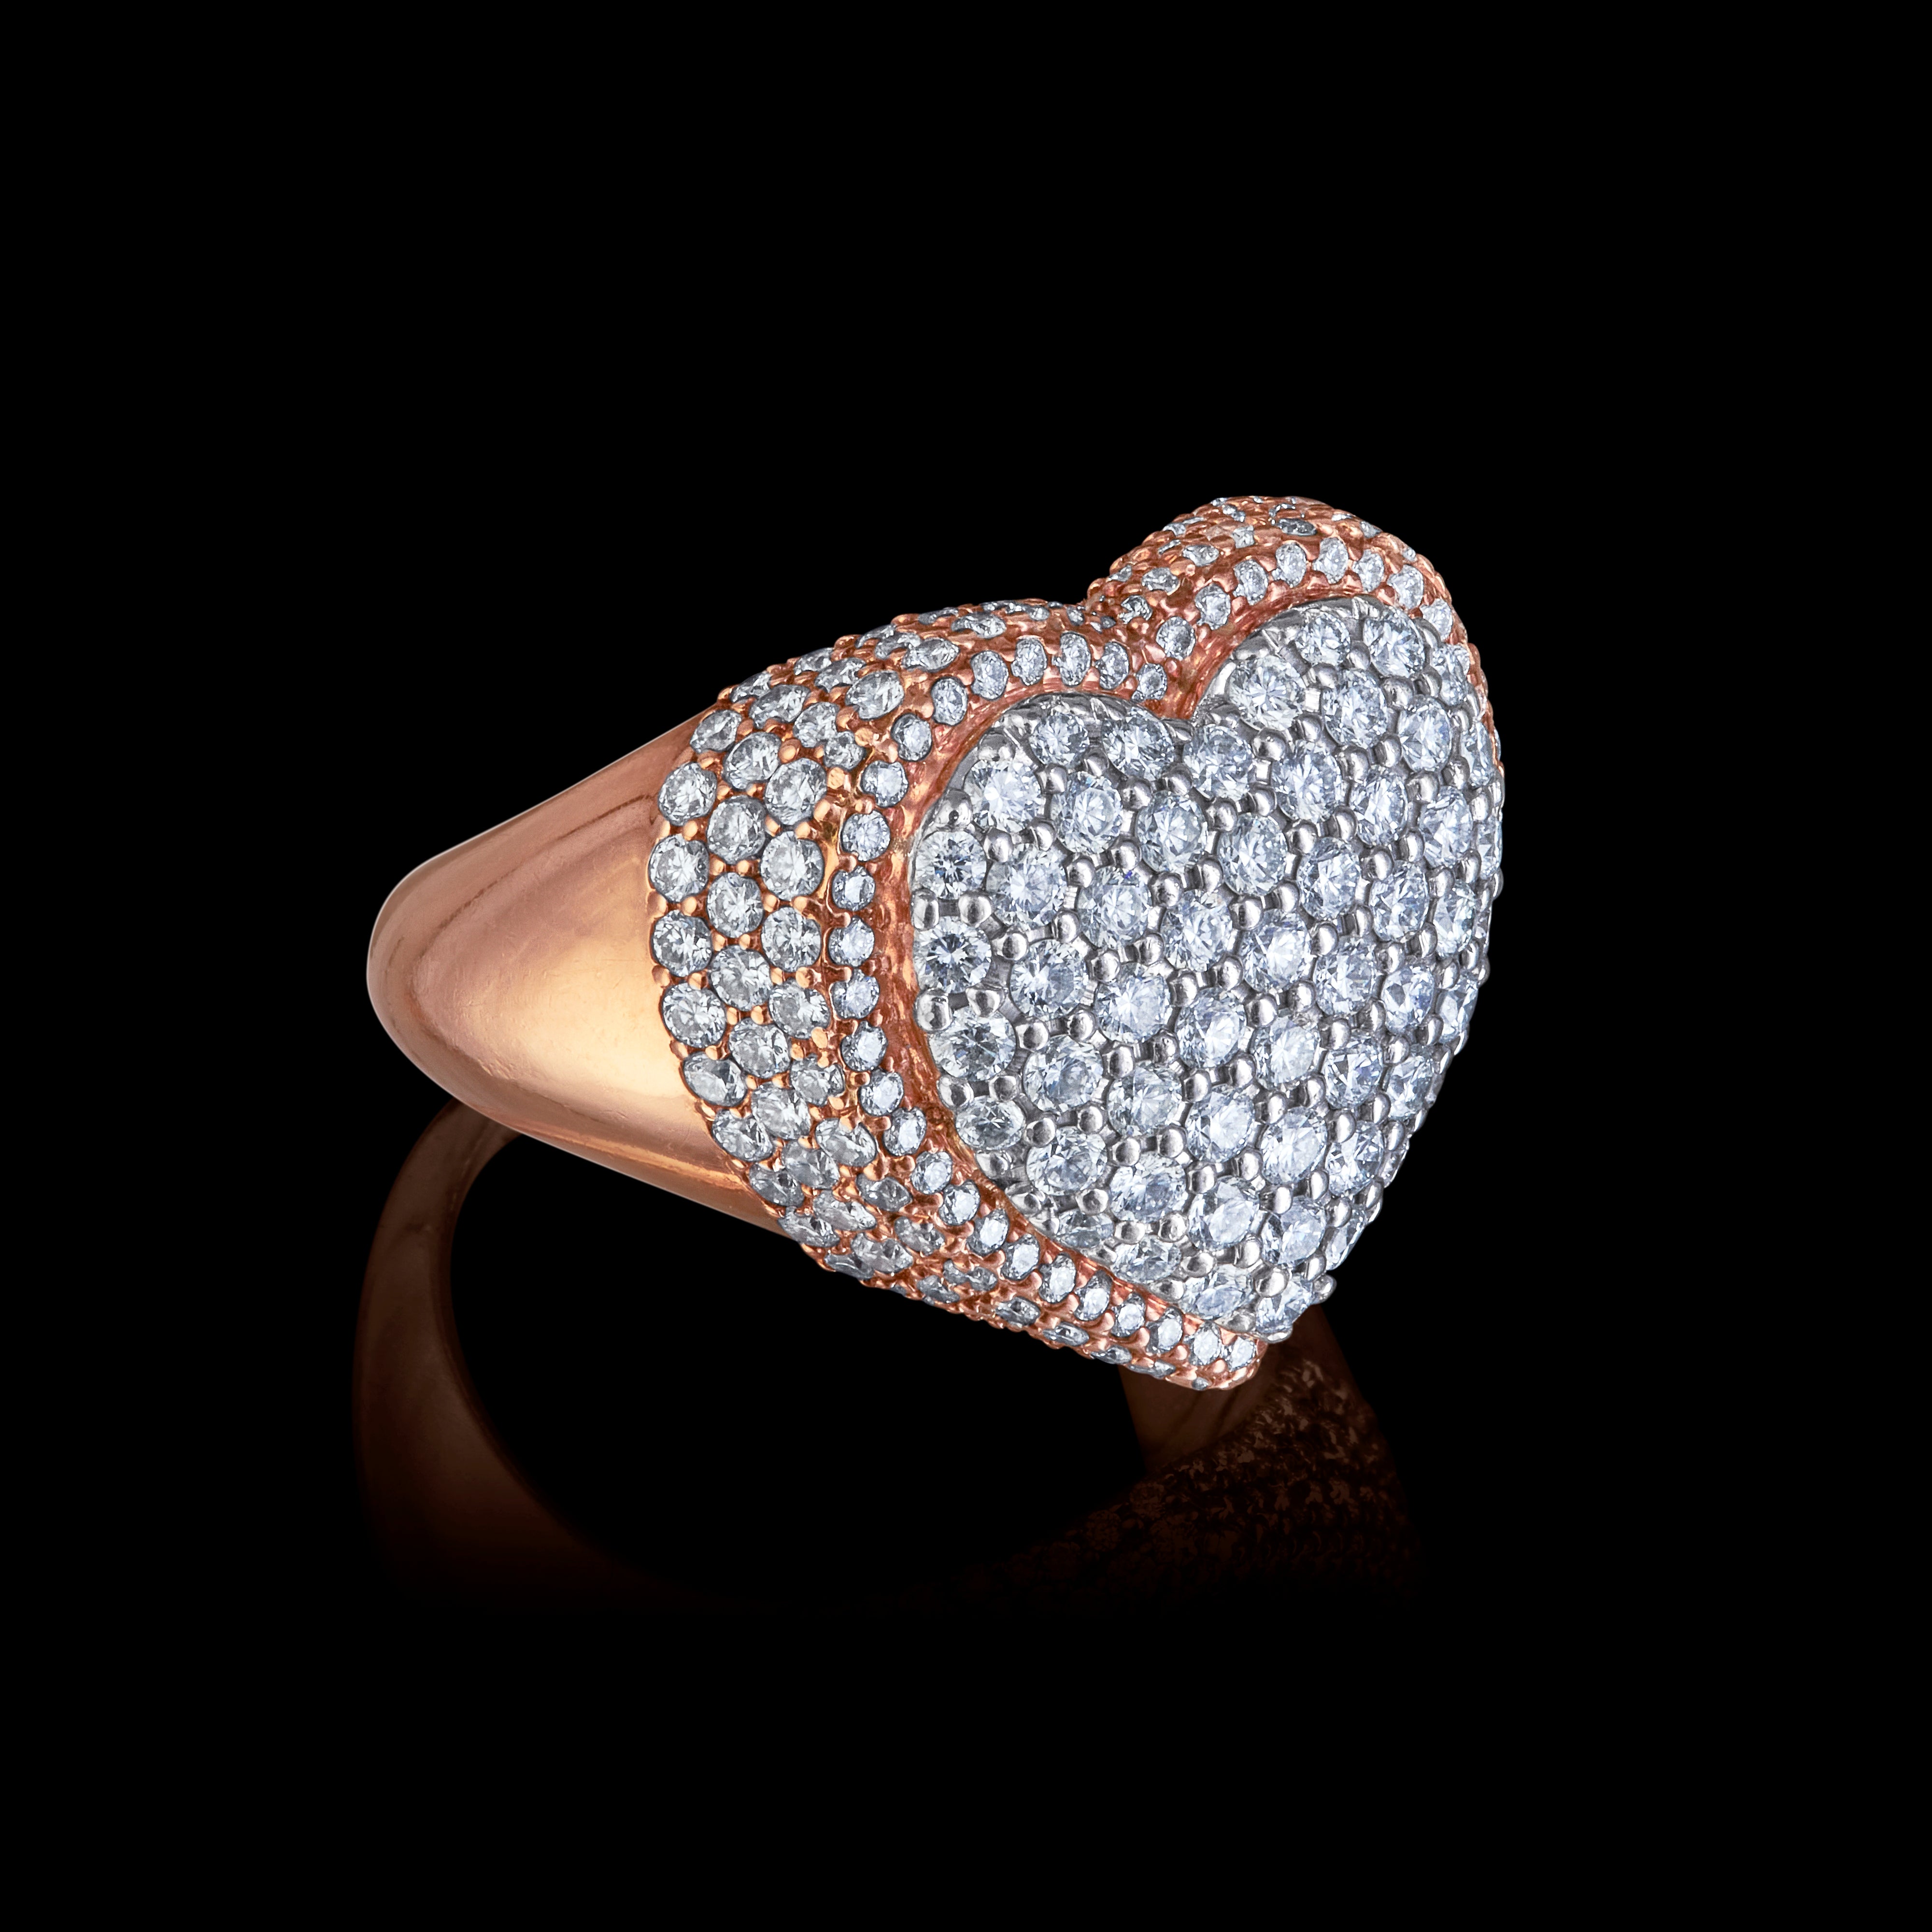 Full heart Diamond ring